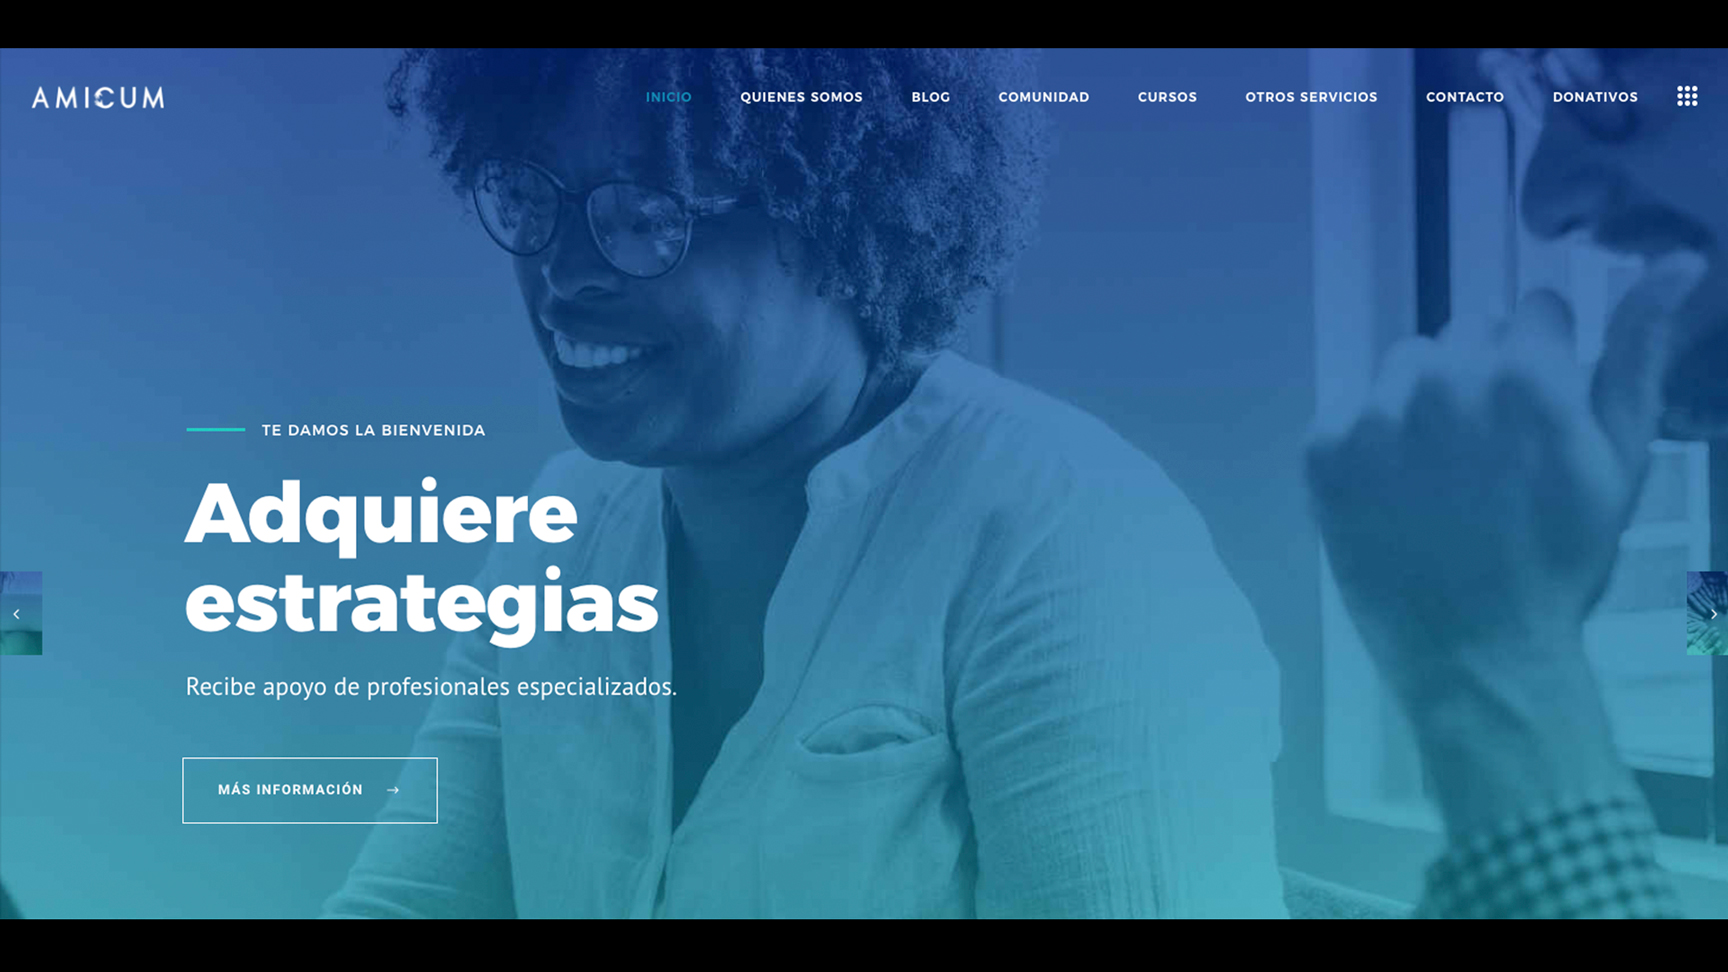 Universidad de Montemorelos inaugura centro de influencia online orientado al bienestar integral 